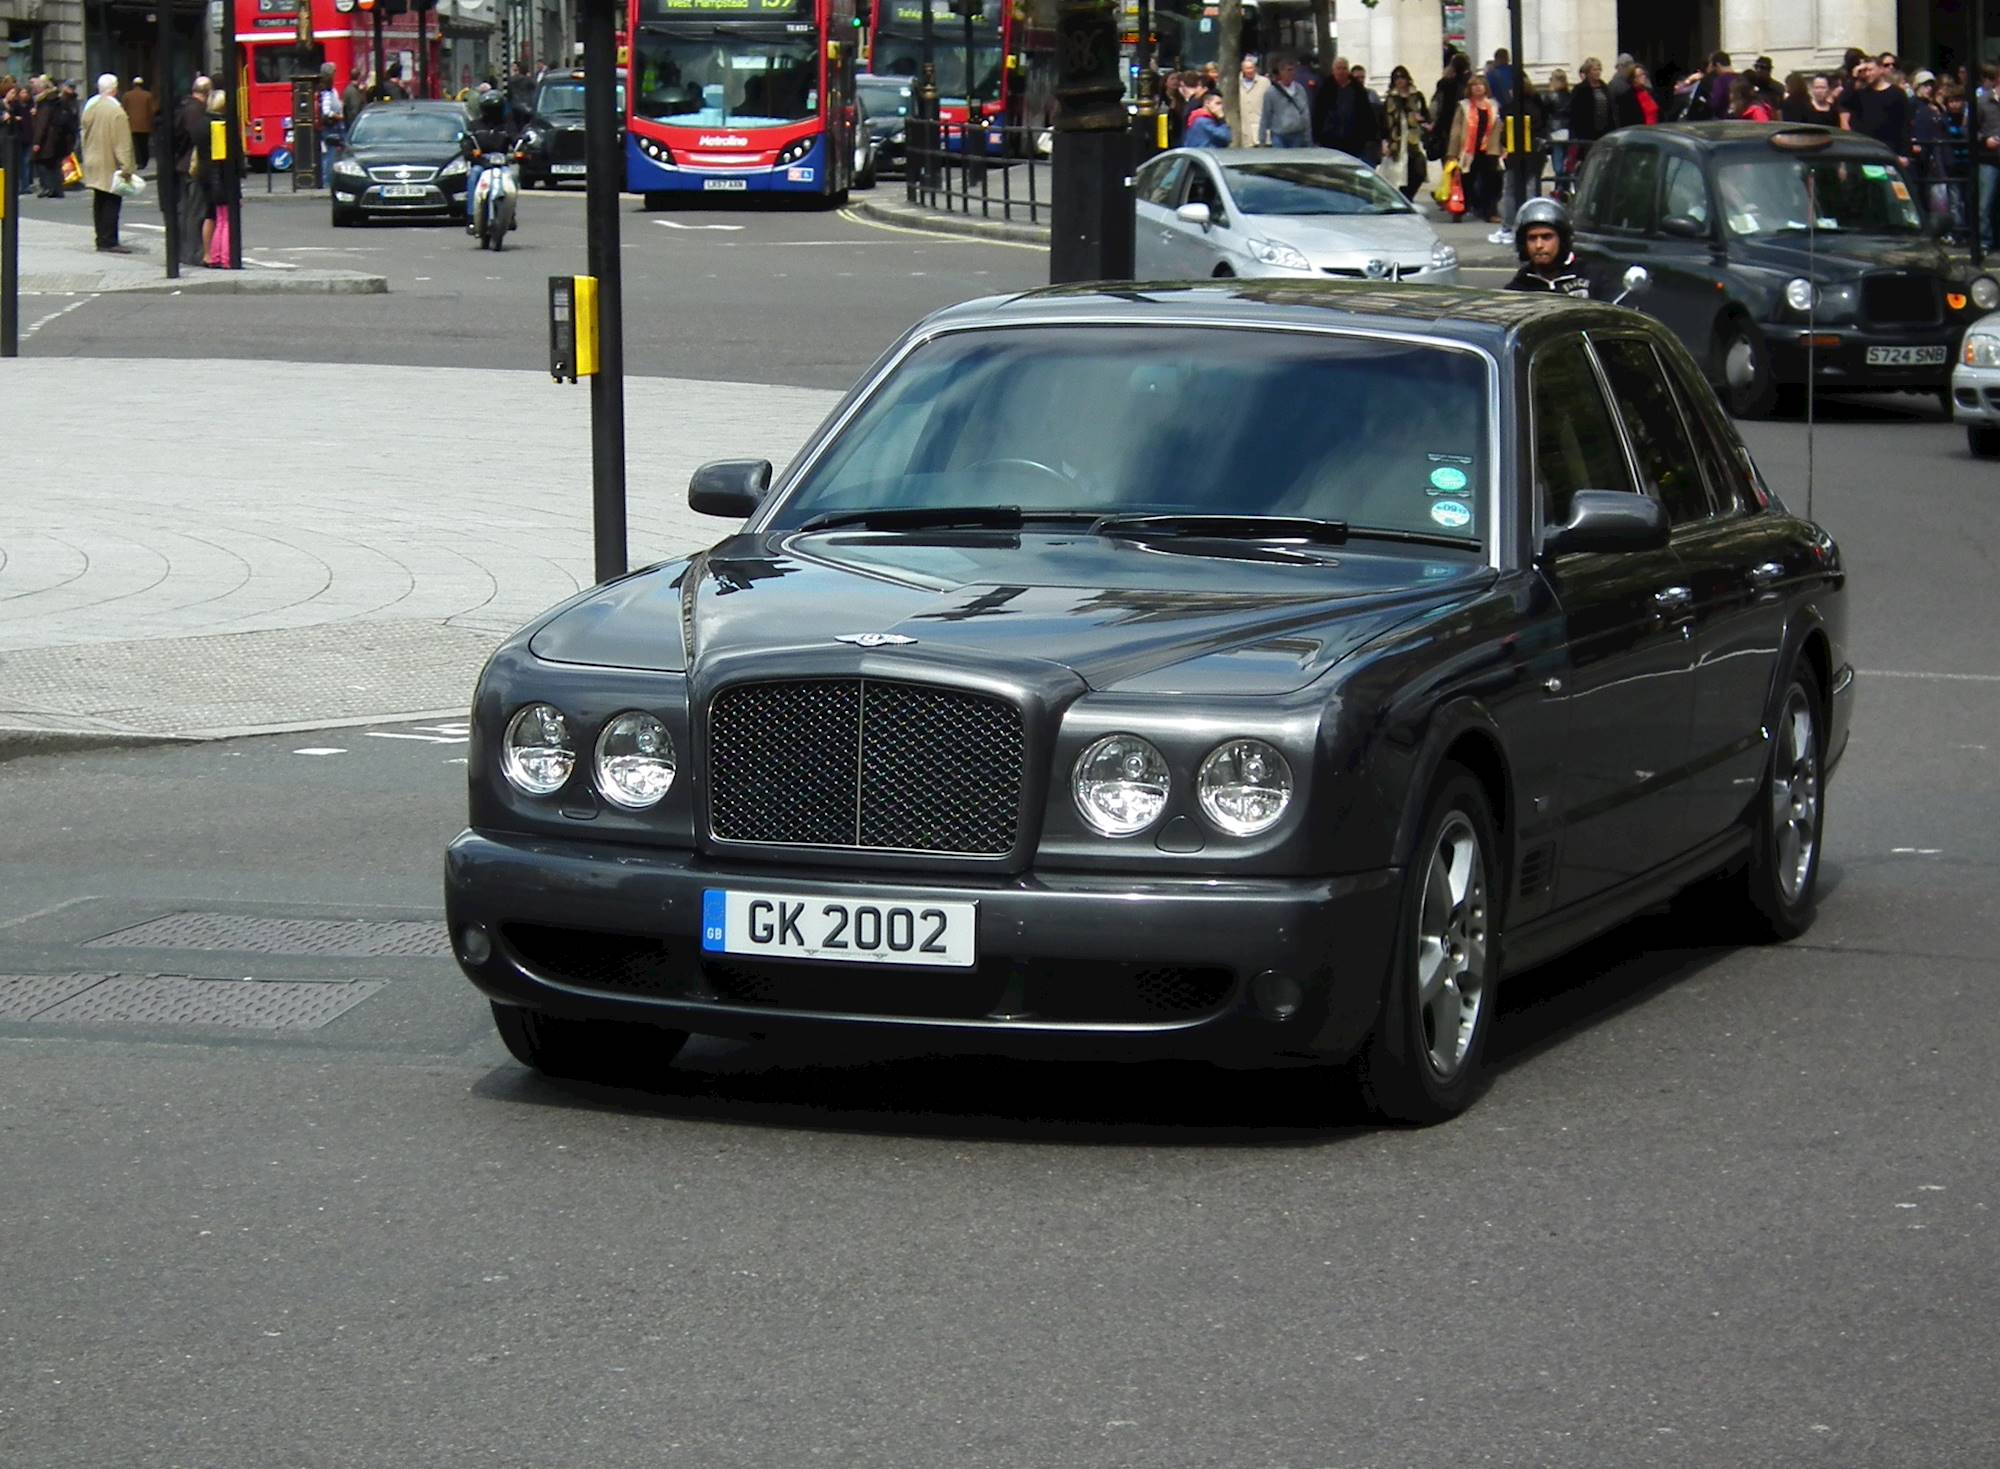 Luxury On Wheels: The 2007 Bentley Arnage